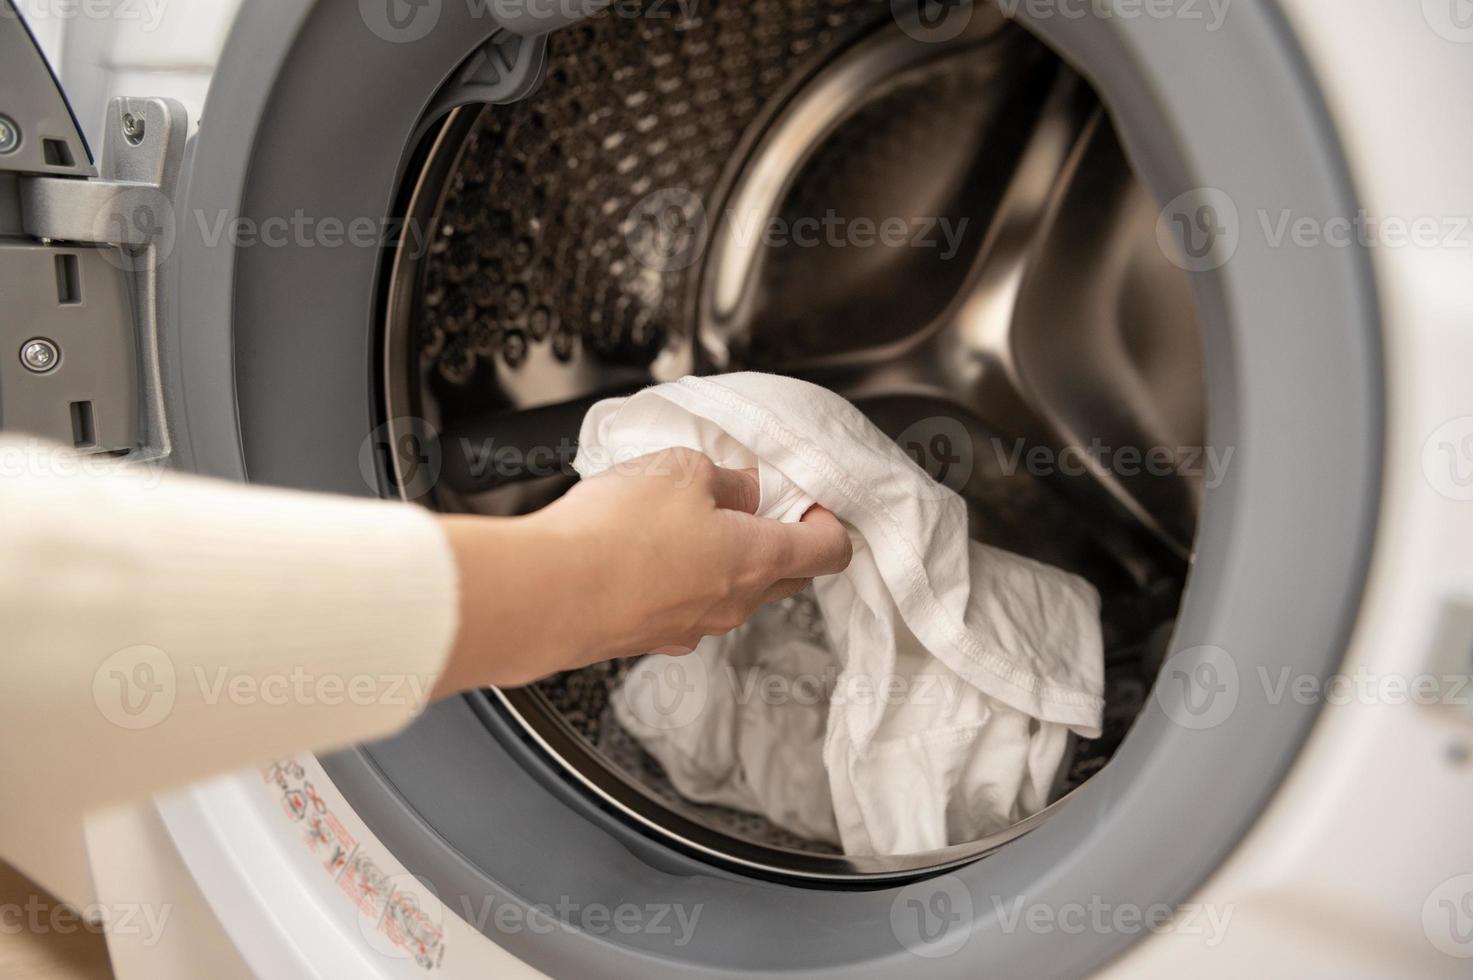 närbild kvinna hand är förvaring kläder i tvättning maskin , hälsa vård livsstil begrepp foto